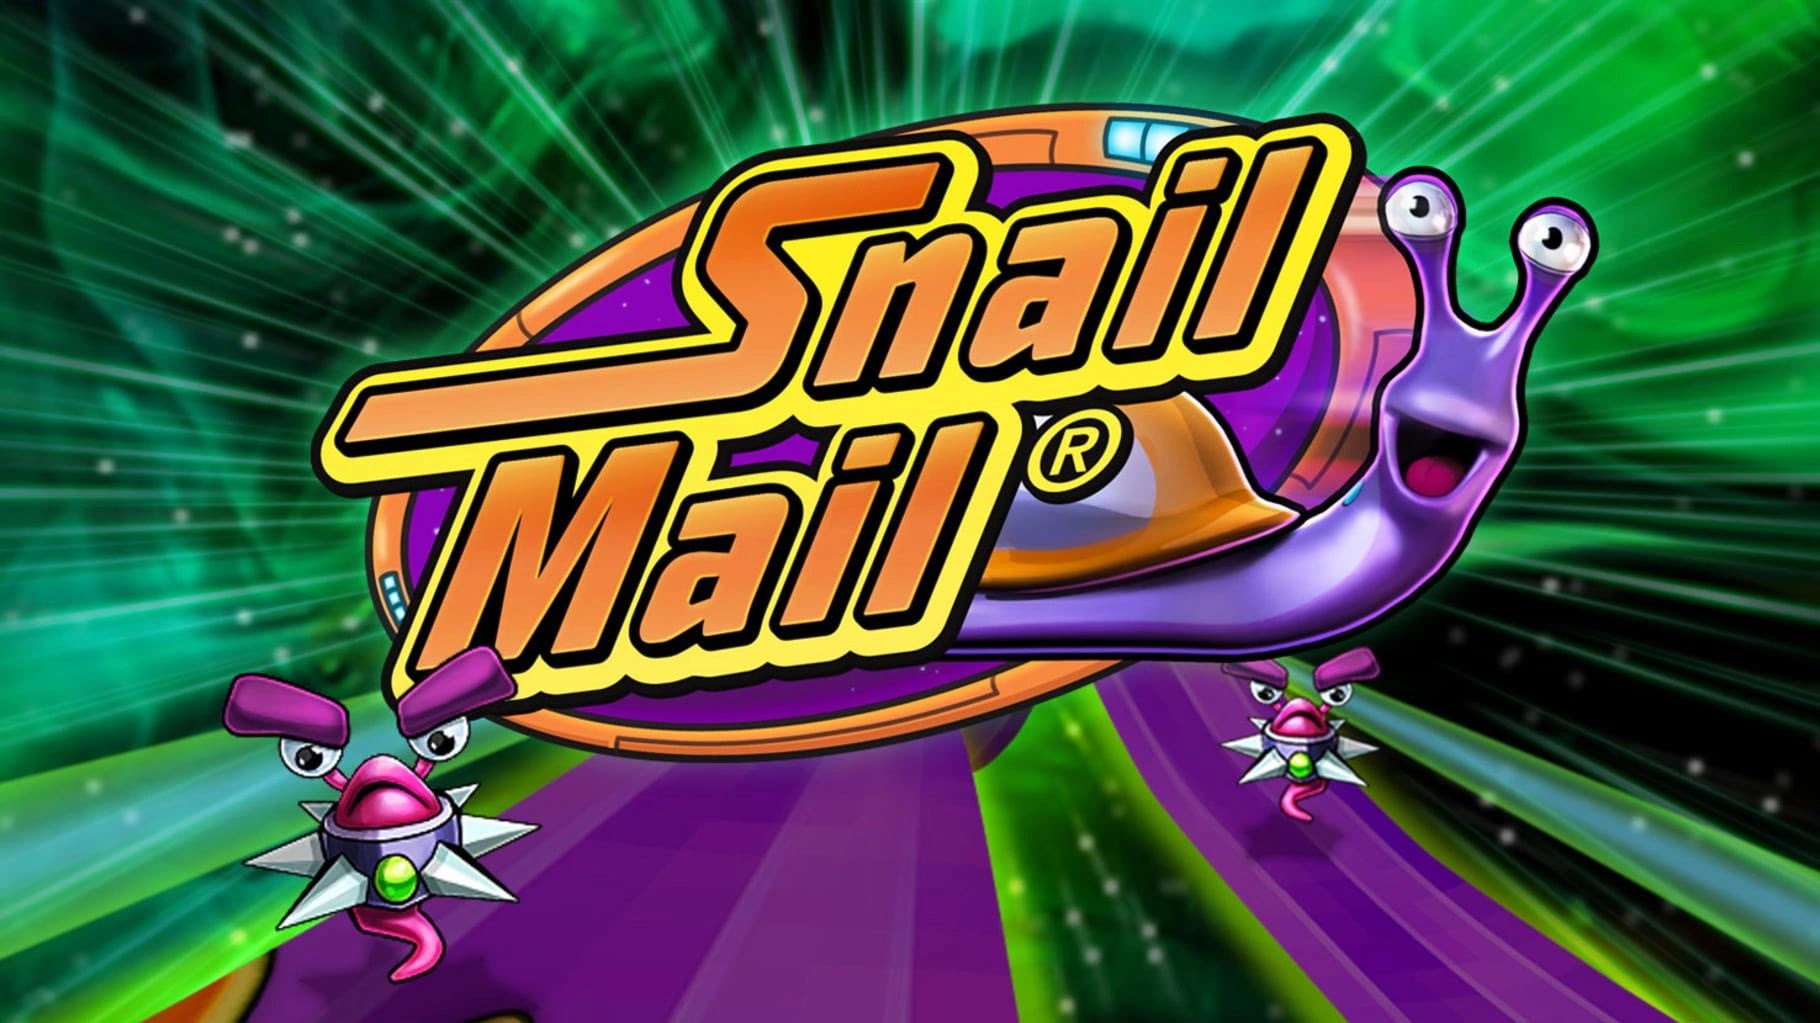 تحميل لعبة الدودة الشقية للكمبيوتر من ميديا فاير مجاناً - Snail Mail